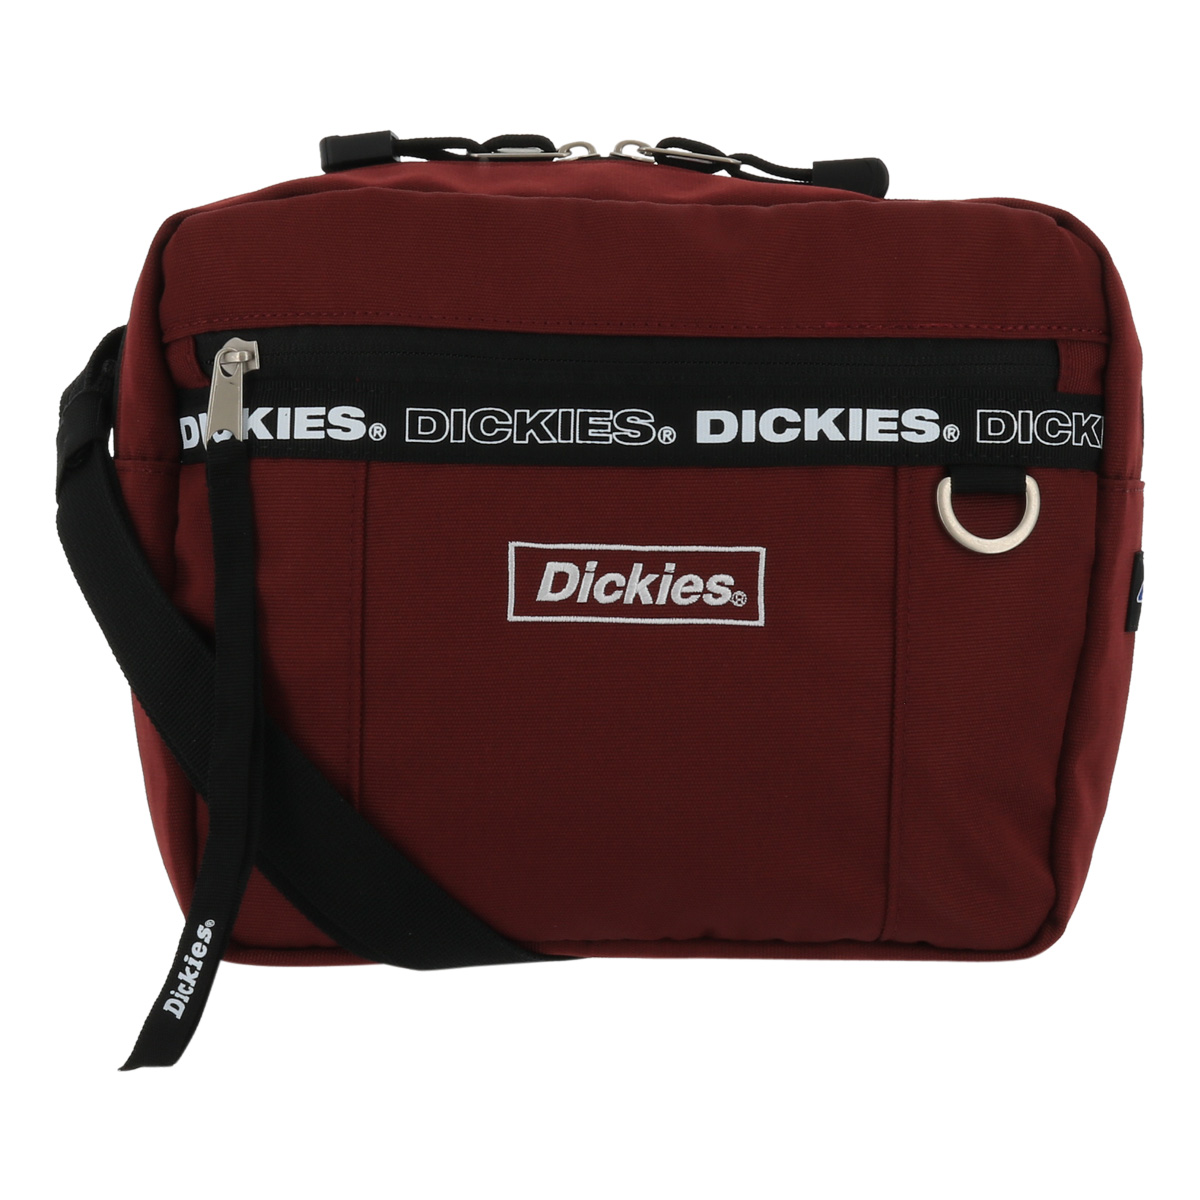 ディッキーズ ショルダーバッグ 横型 フレーム ロゴ メンズ レディース 14504300 DICK...